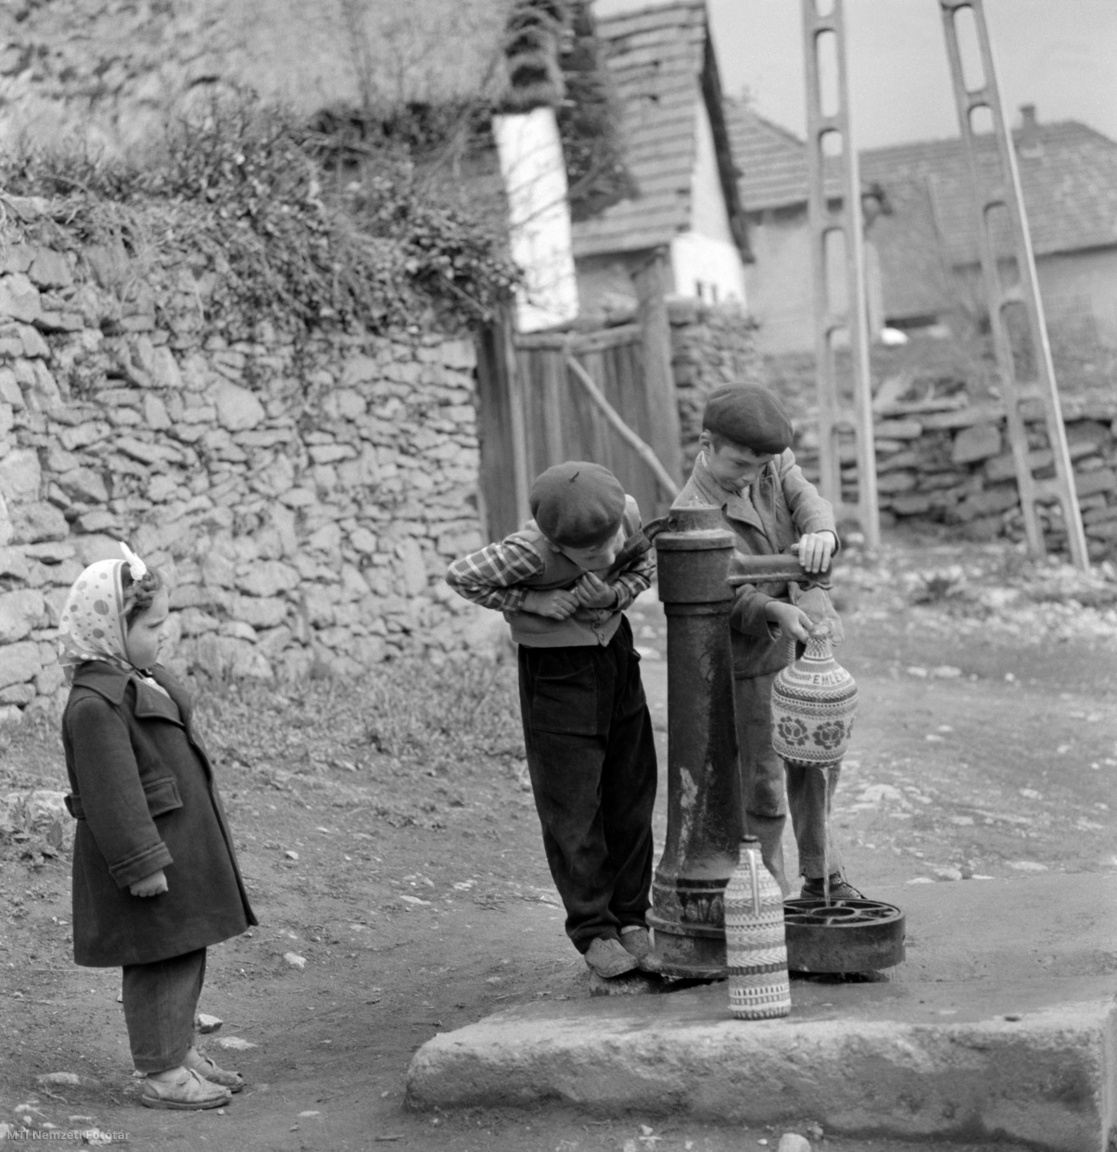 Magyarország, 1964. április 27. Fiúk egy utcai nyomókúton – Norton kút – vízzel töltik meg a demizsonokat, miközben egy kislány figyeli őket. A felvétel készítésének pontos helye ismeretlen